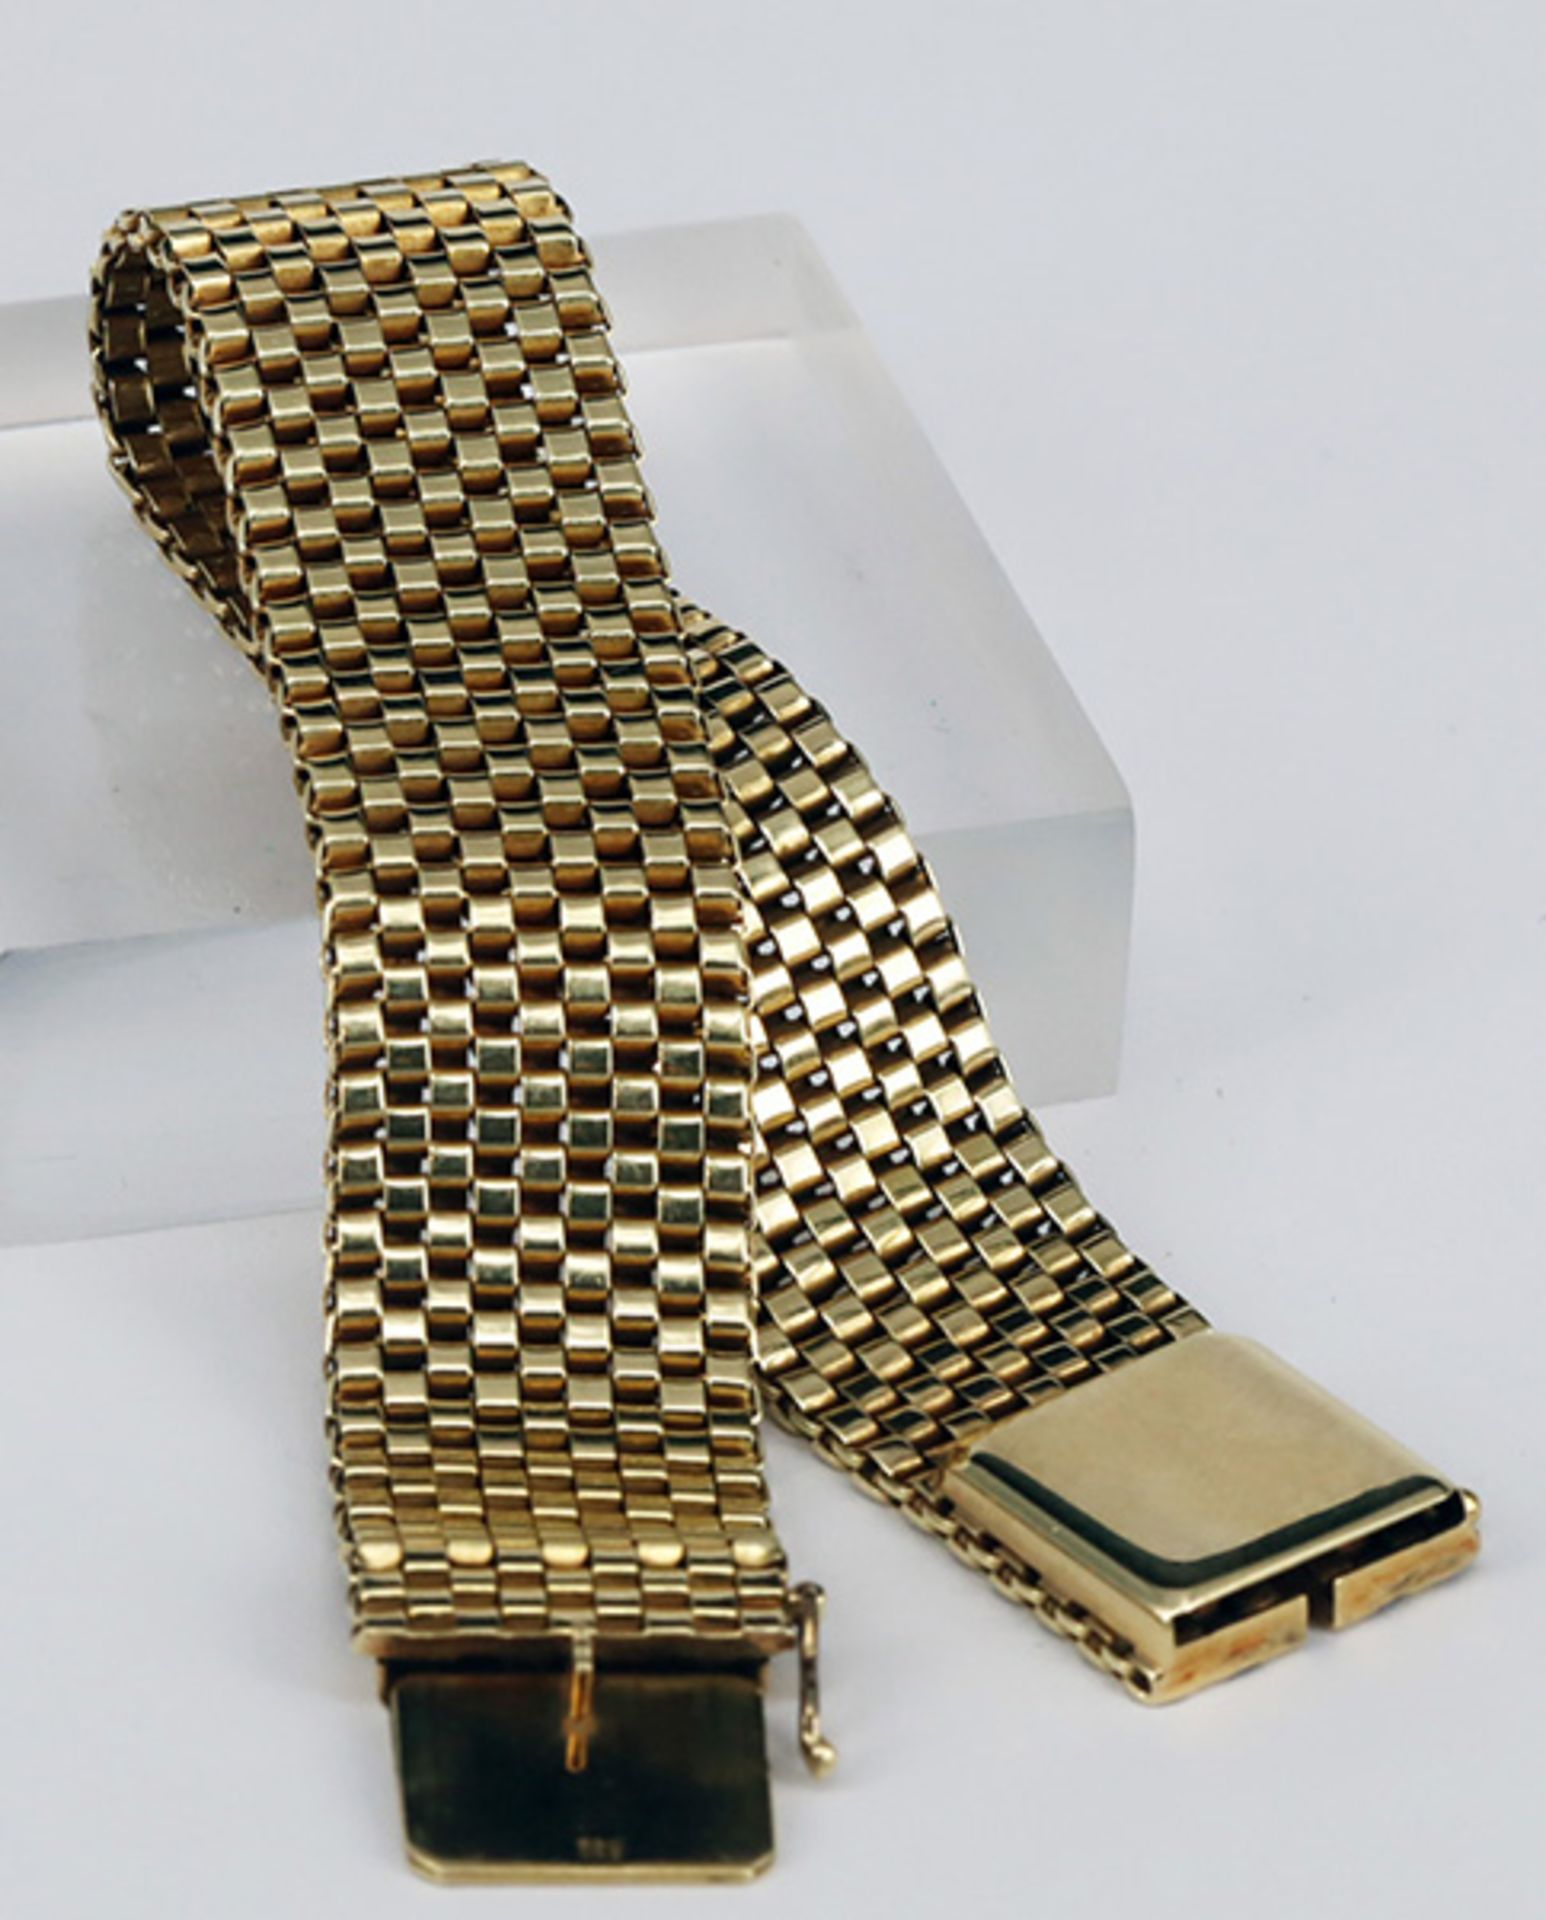 Armband, 585er GG, mit Kastenschloss und Sicherheitsachter, L 19 cm, 34,4 g - Image 4 of 5